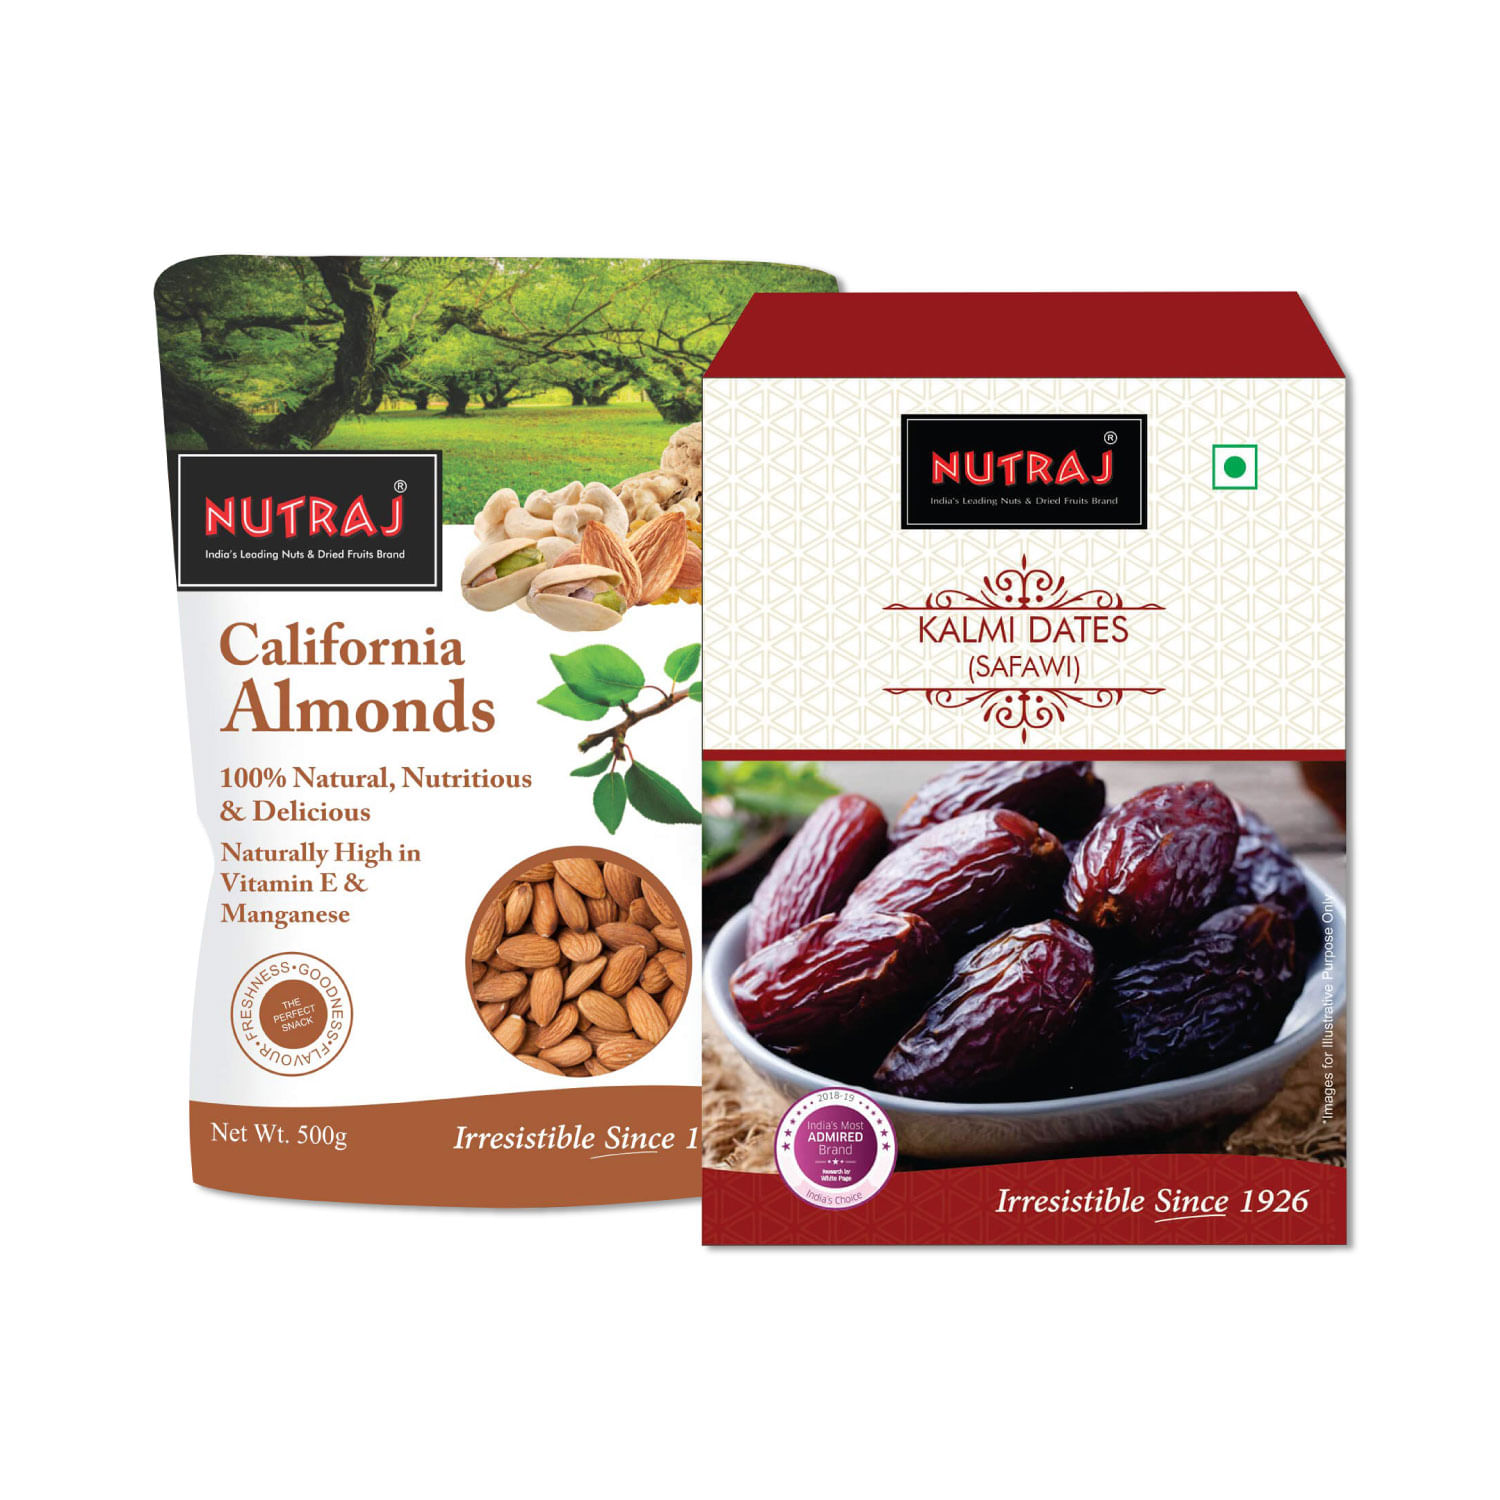 Nutraj Kalmi Dates (Safawi) (500g) and Nutraj California Almonds (500g)